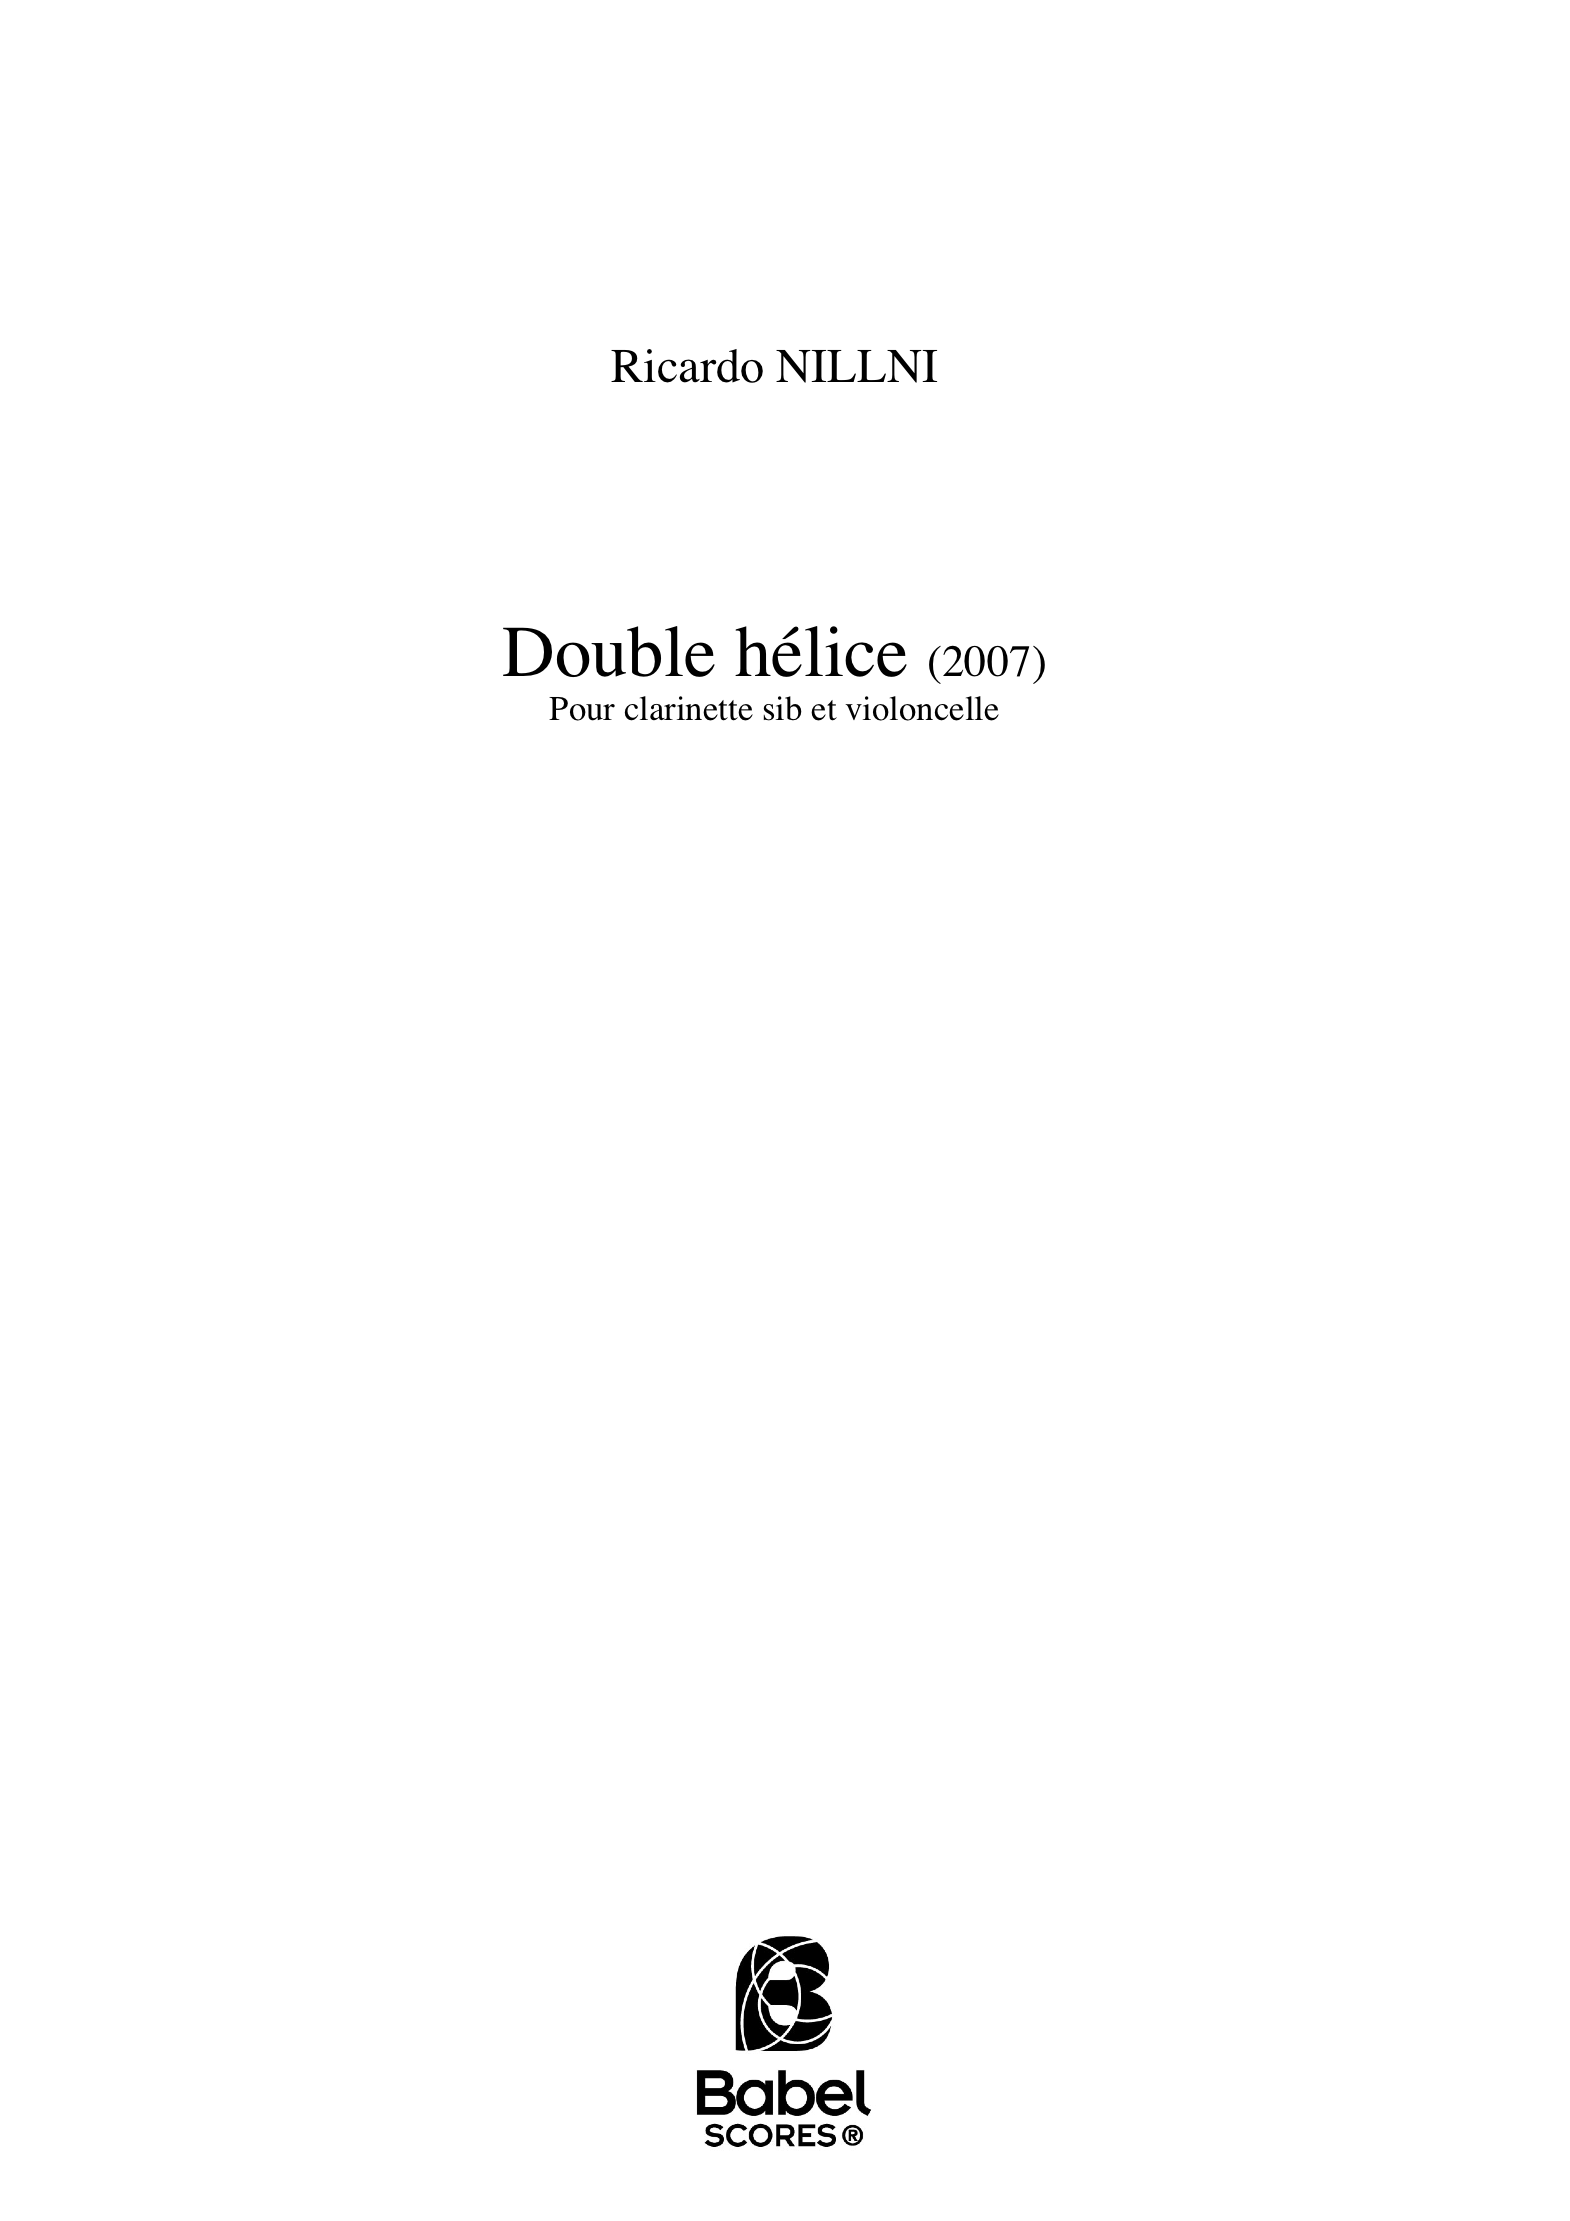 double helice NILLNI_ A4 z